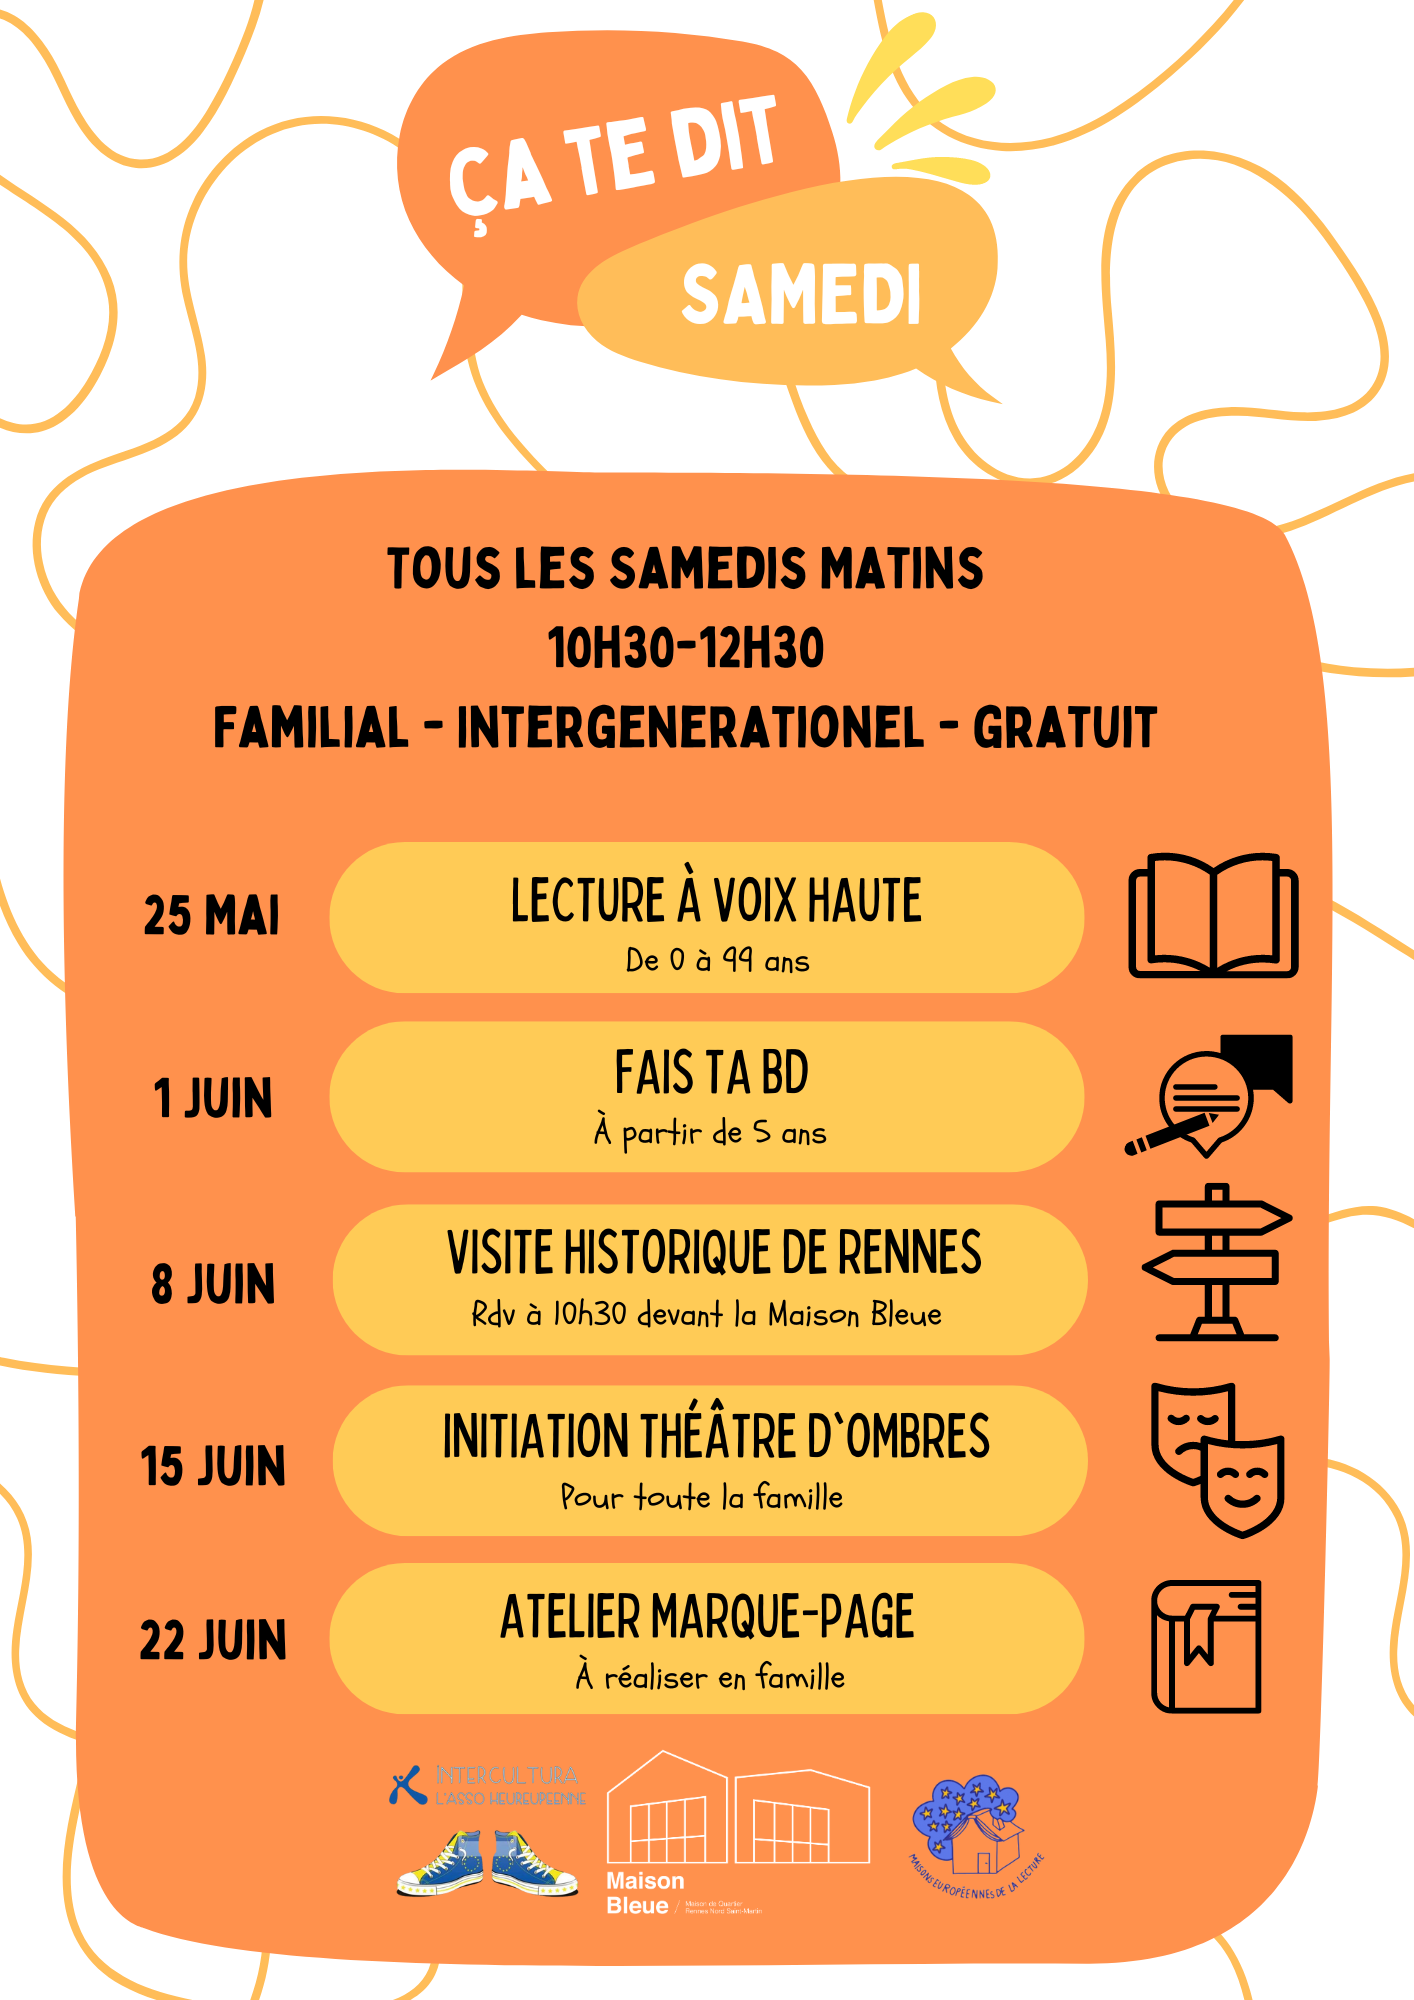 [Evènement] – Ça te dit, samedi : programme du 25 mai @ La Maison Bleue | Rennes | Bretagne | France